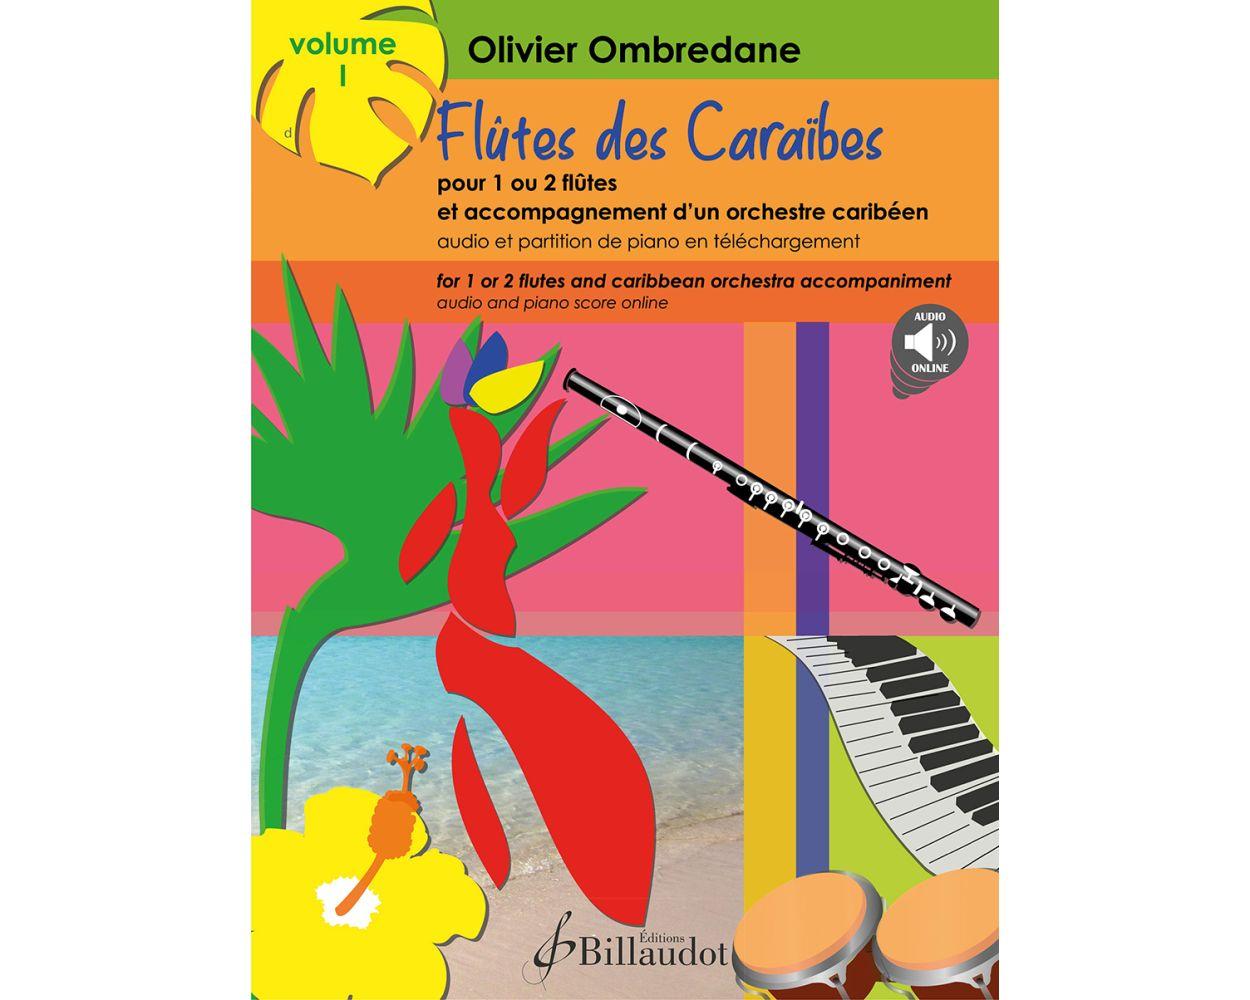 Flutes Des Caraibes - Volume 1 - Olivier Ombredane | Suono Flauti